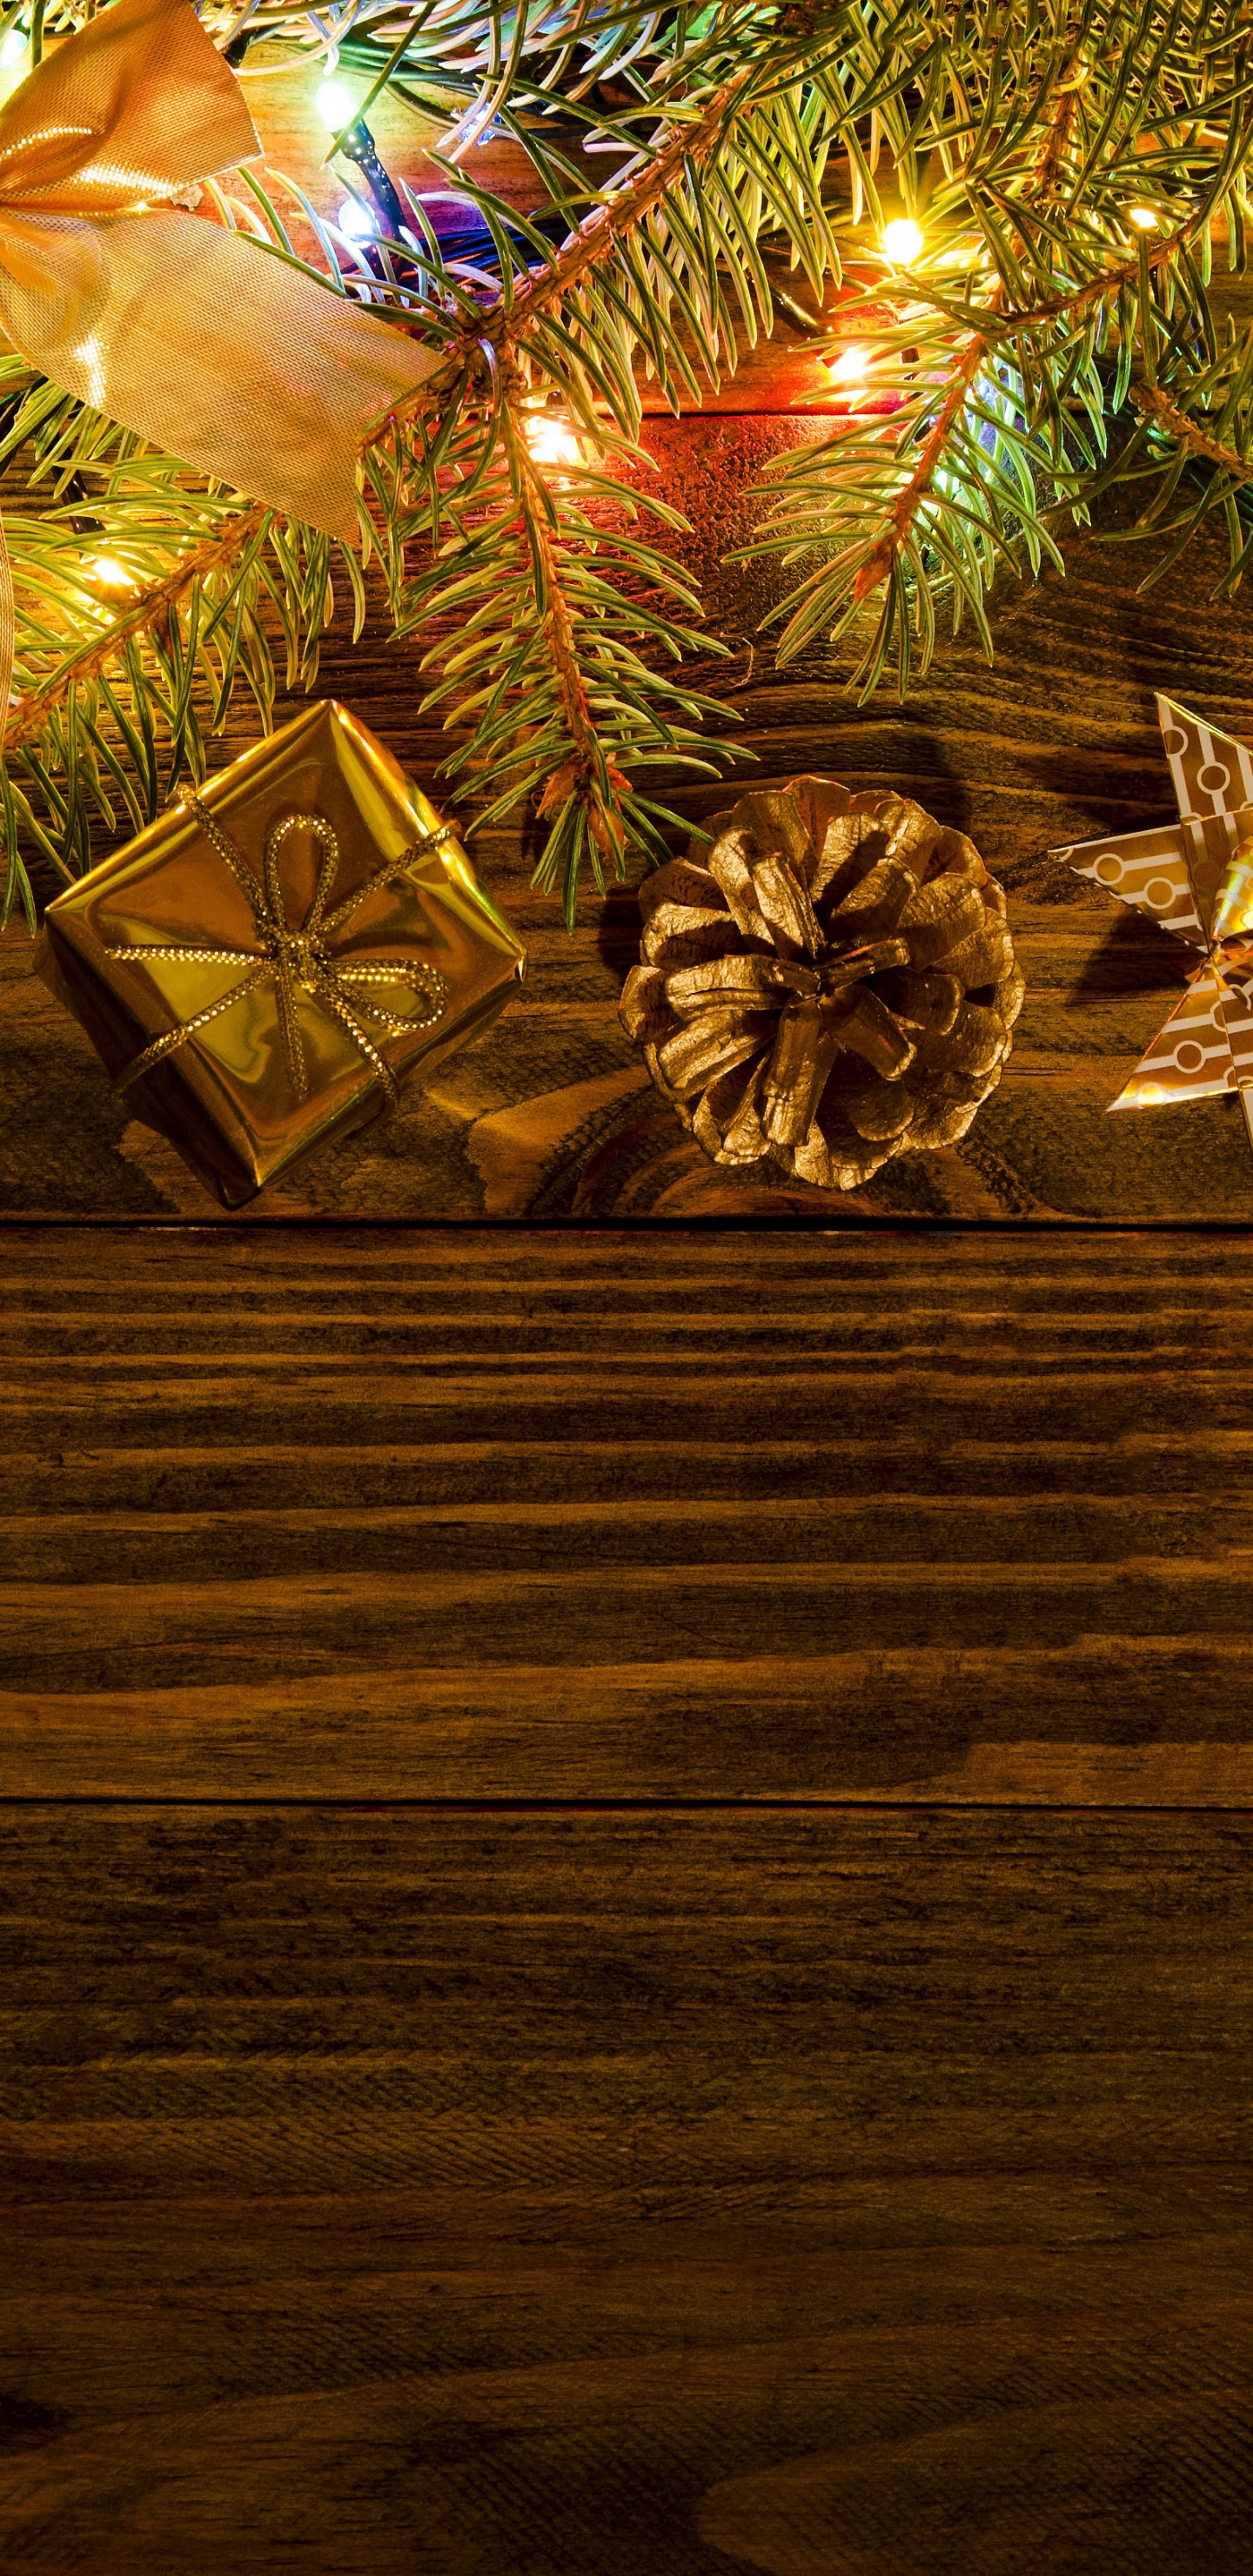 Nochevieja, El Día De Navidad, Navidad, Decoración de la Navidad, Luces de Navidad. Wallpaper in 1440x2960 Resolution